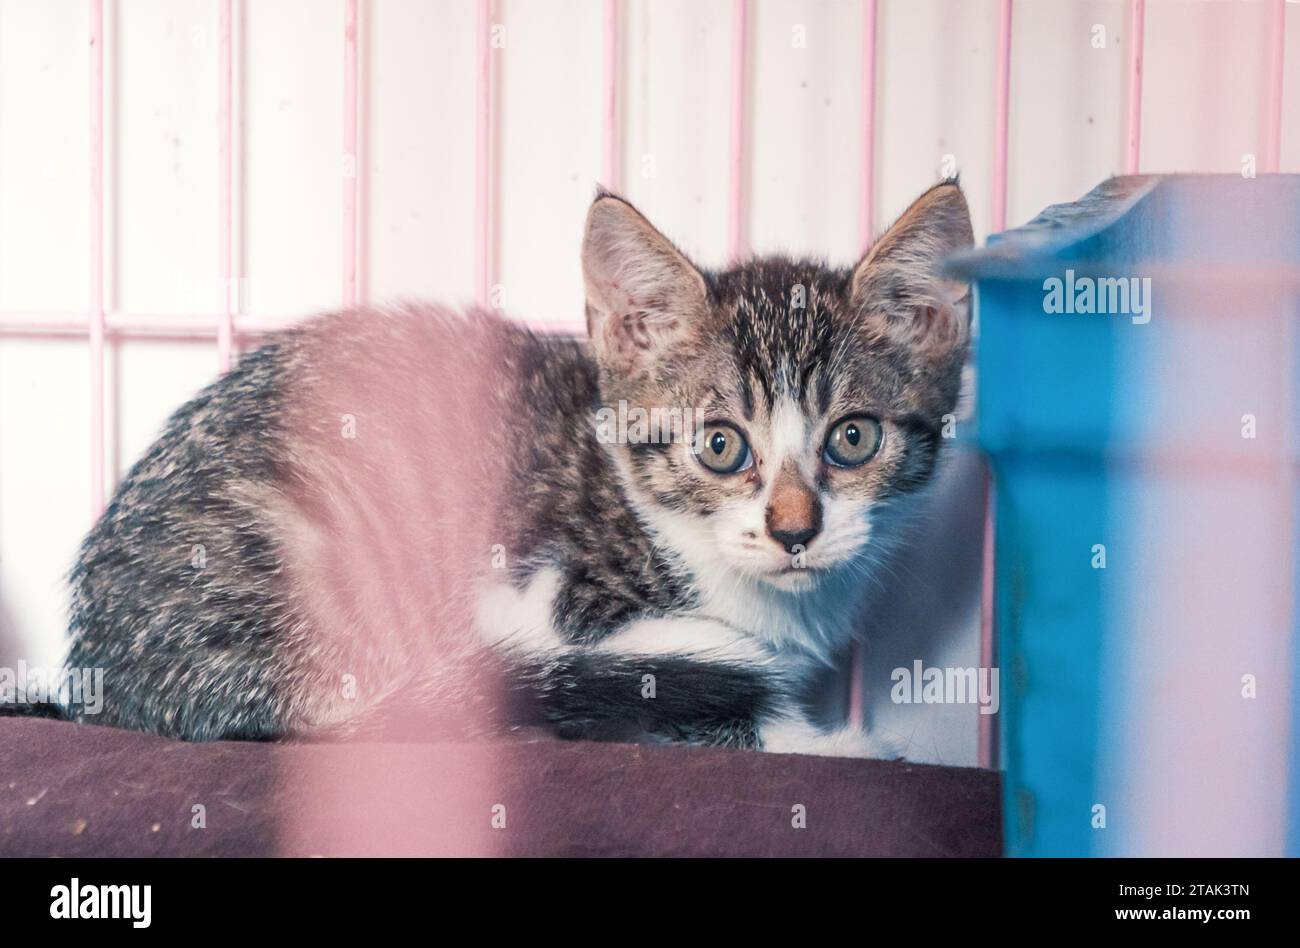 Gattino randagio solitario nella gabbia in un rifugio per animali domestici, soffrendo la fame la vita miserabile, i senzatetto. Concetto di rifugio per animali Foto Stock